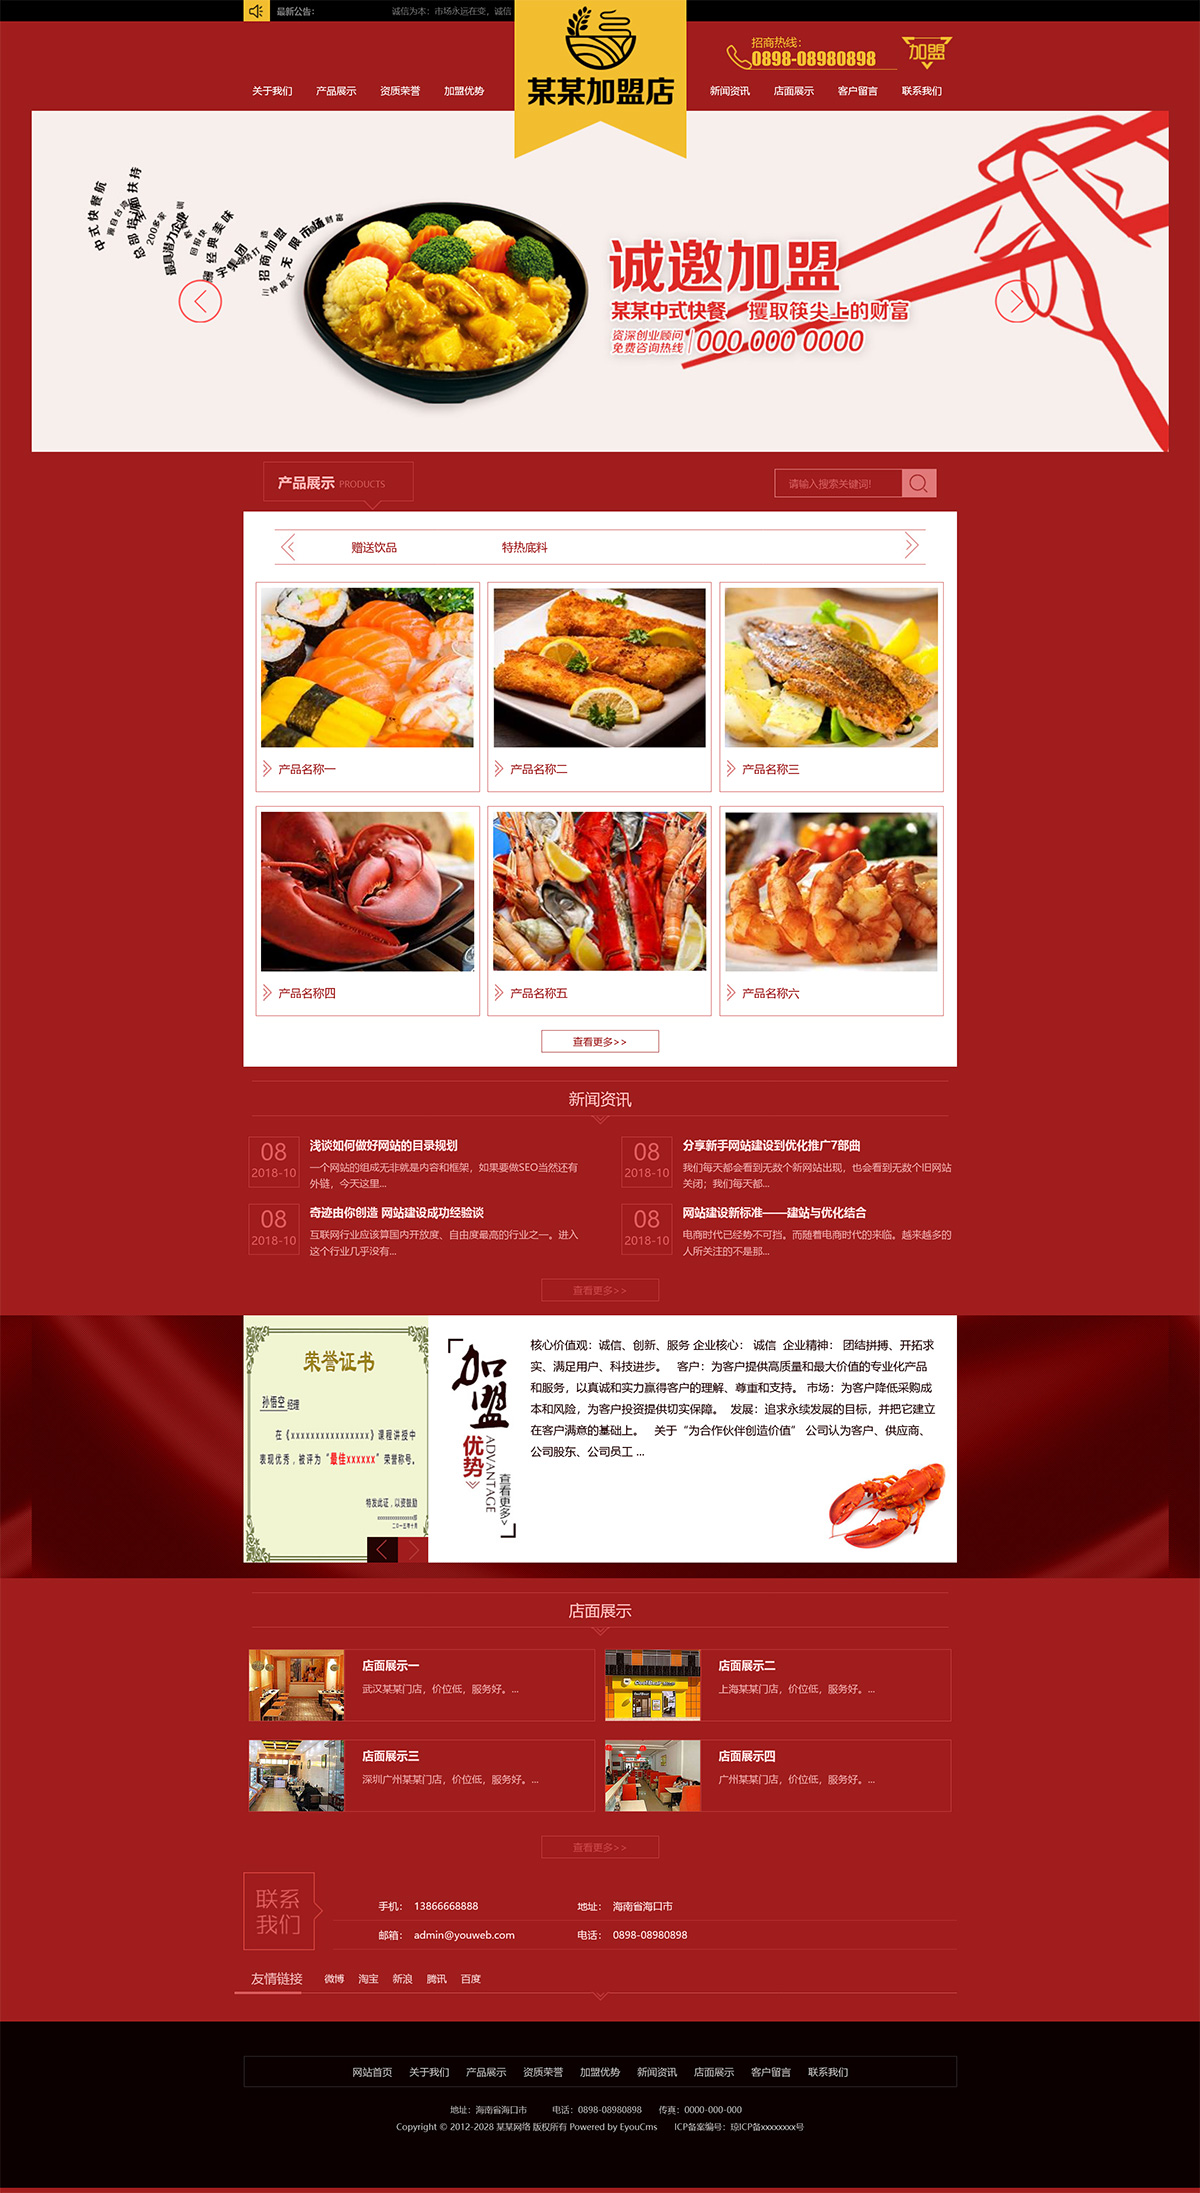  特色小吃店面加盟网页设计模板